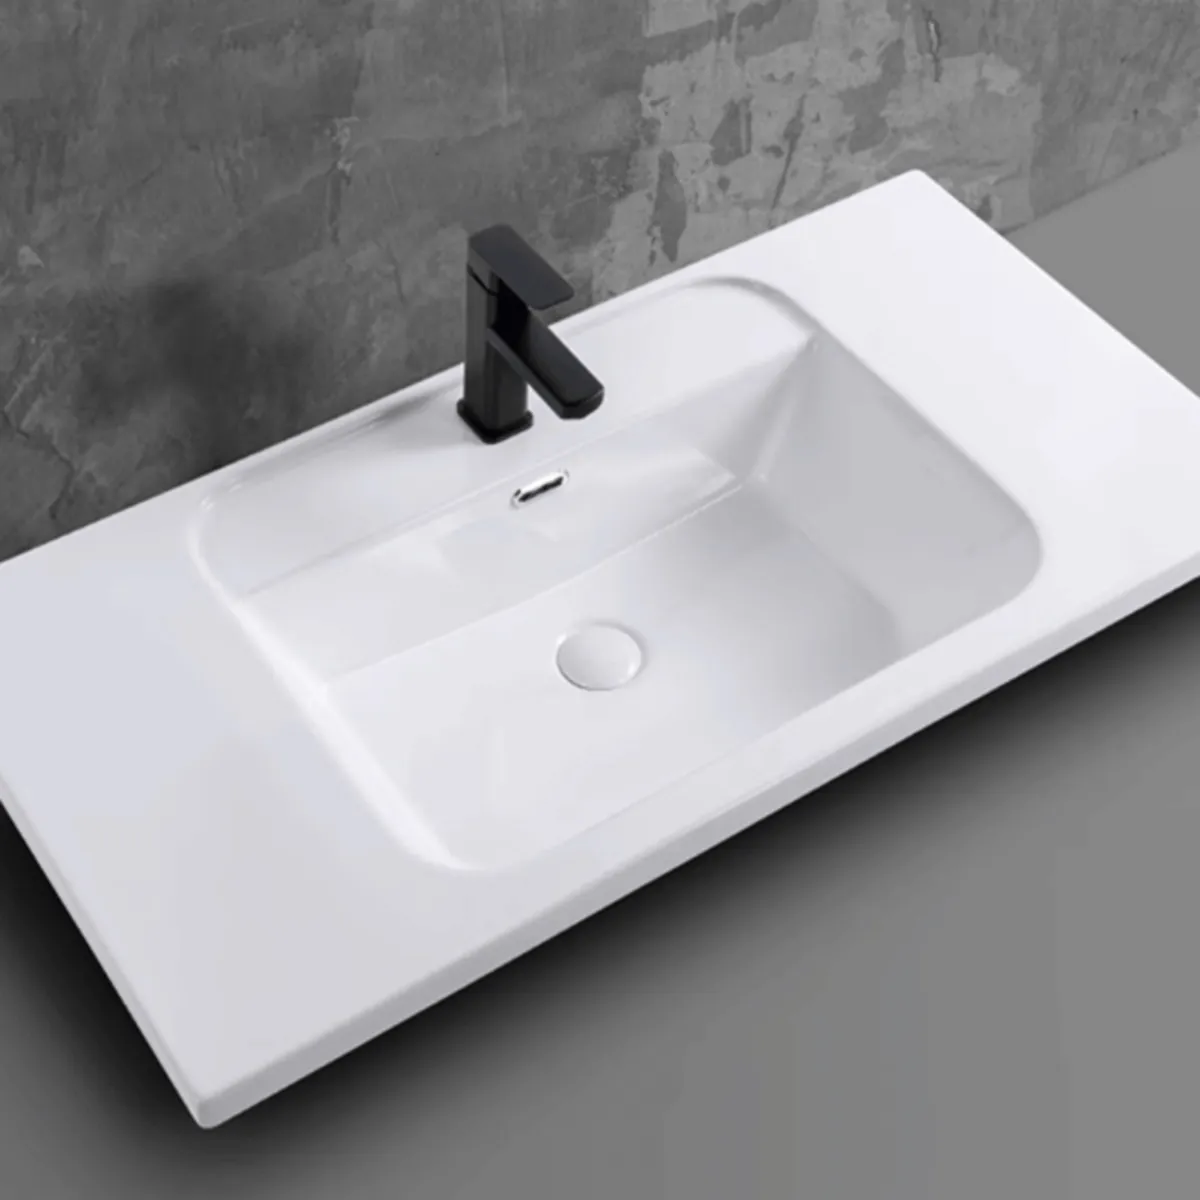 Đặc điểm nổi bật của chậu rửa lavabo âm bàn PLD-668B